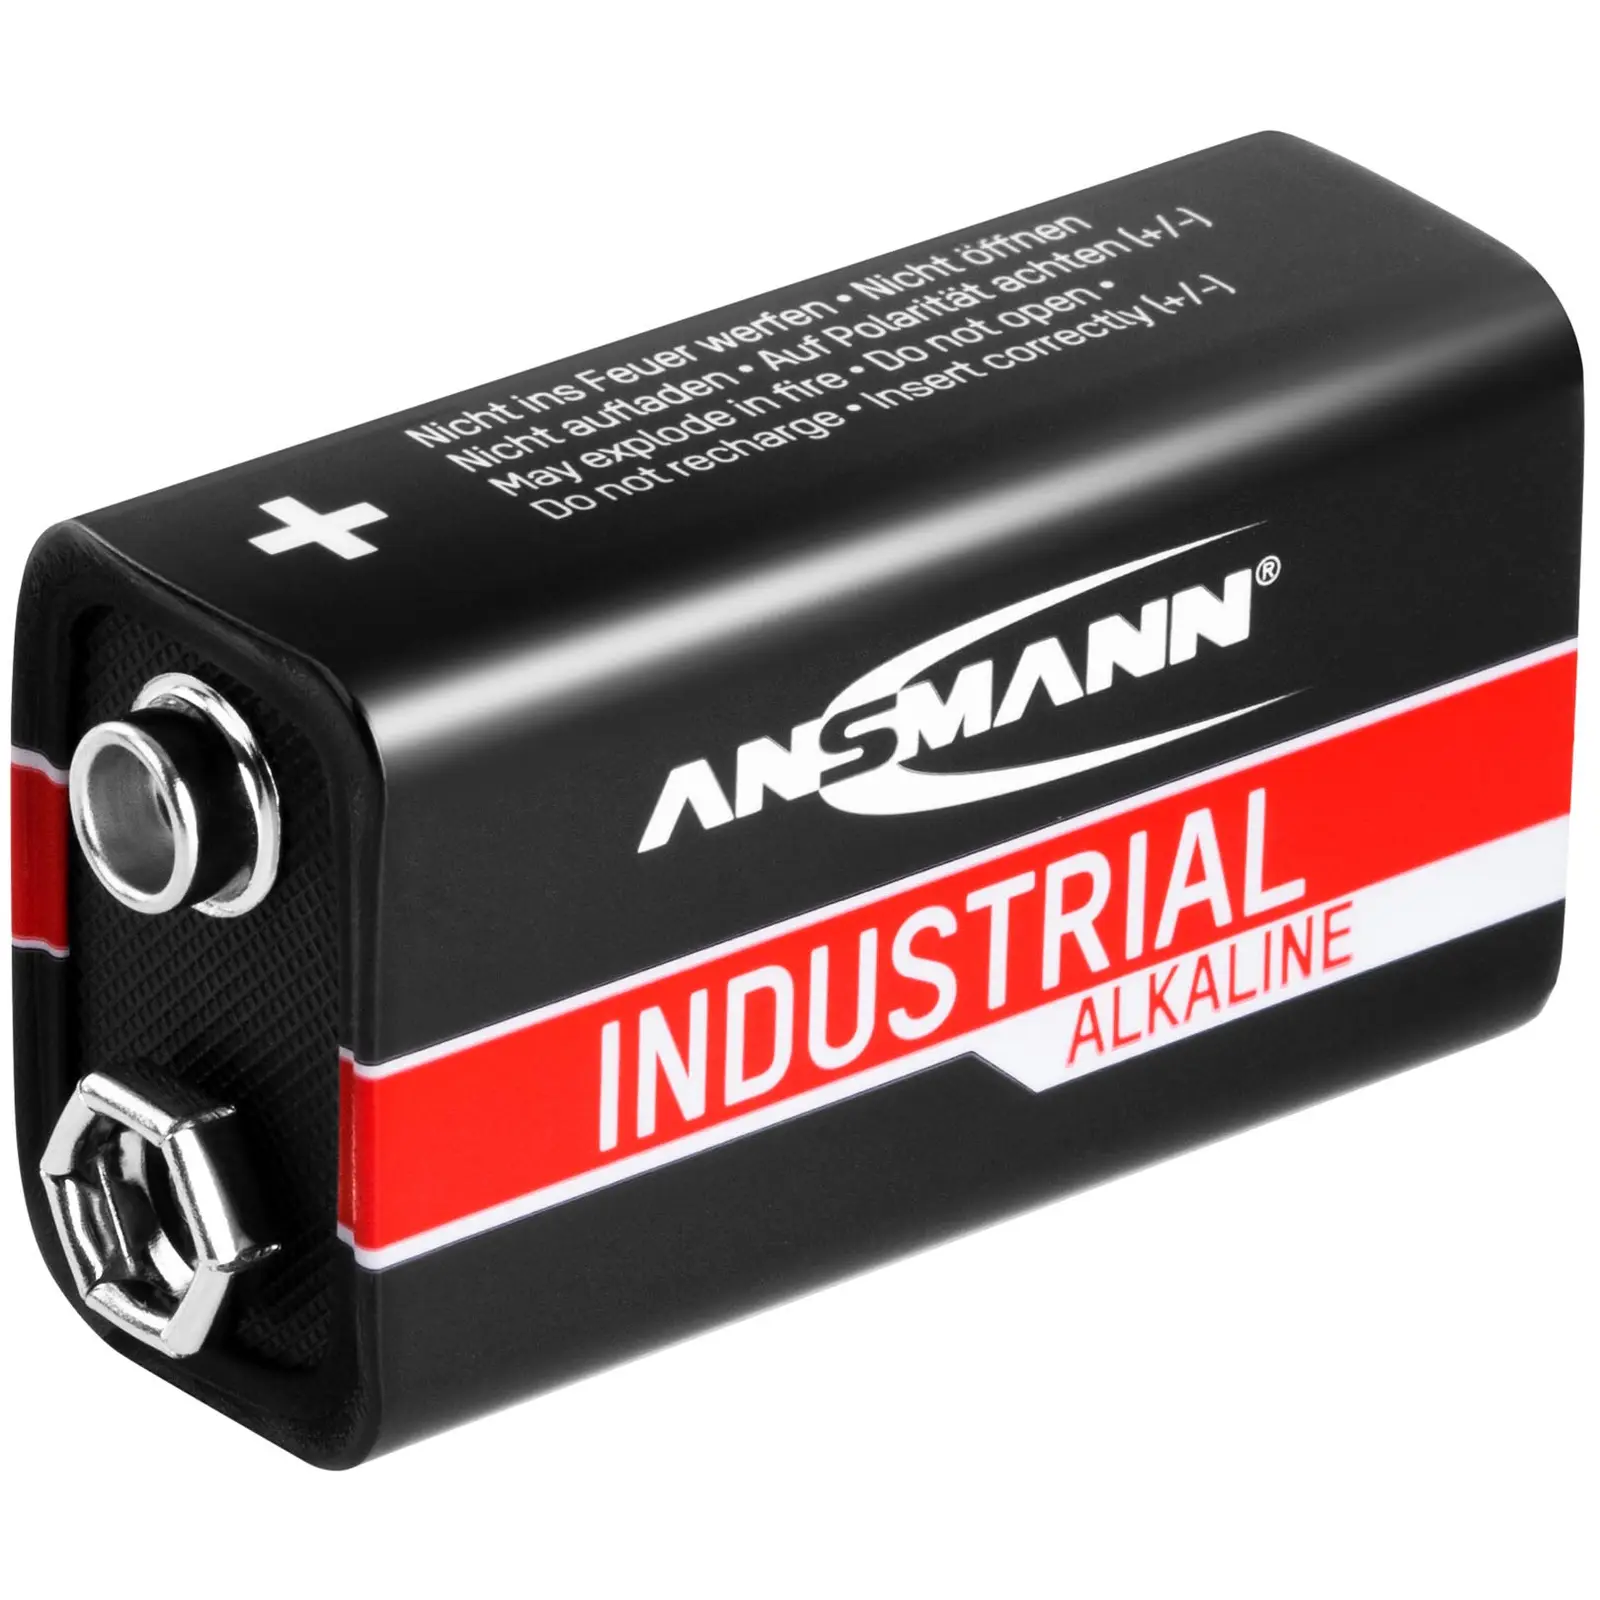 50 x 9 V batteries 6LR61 - Ansmann INDUSTRIAL Alkaline Batteries - 9 V